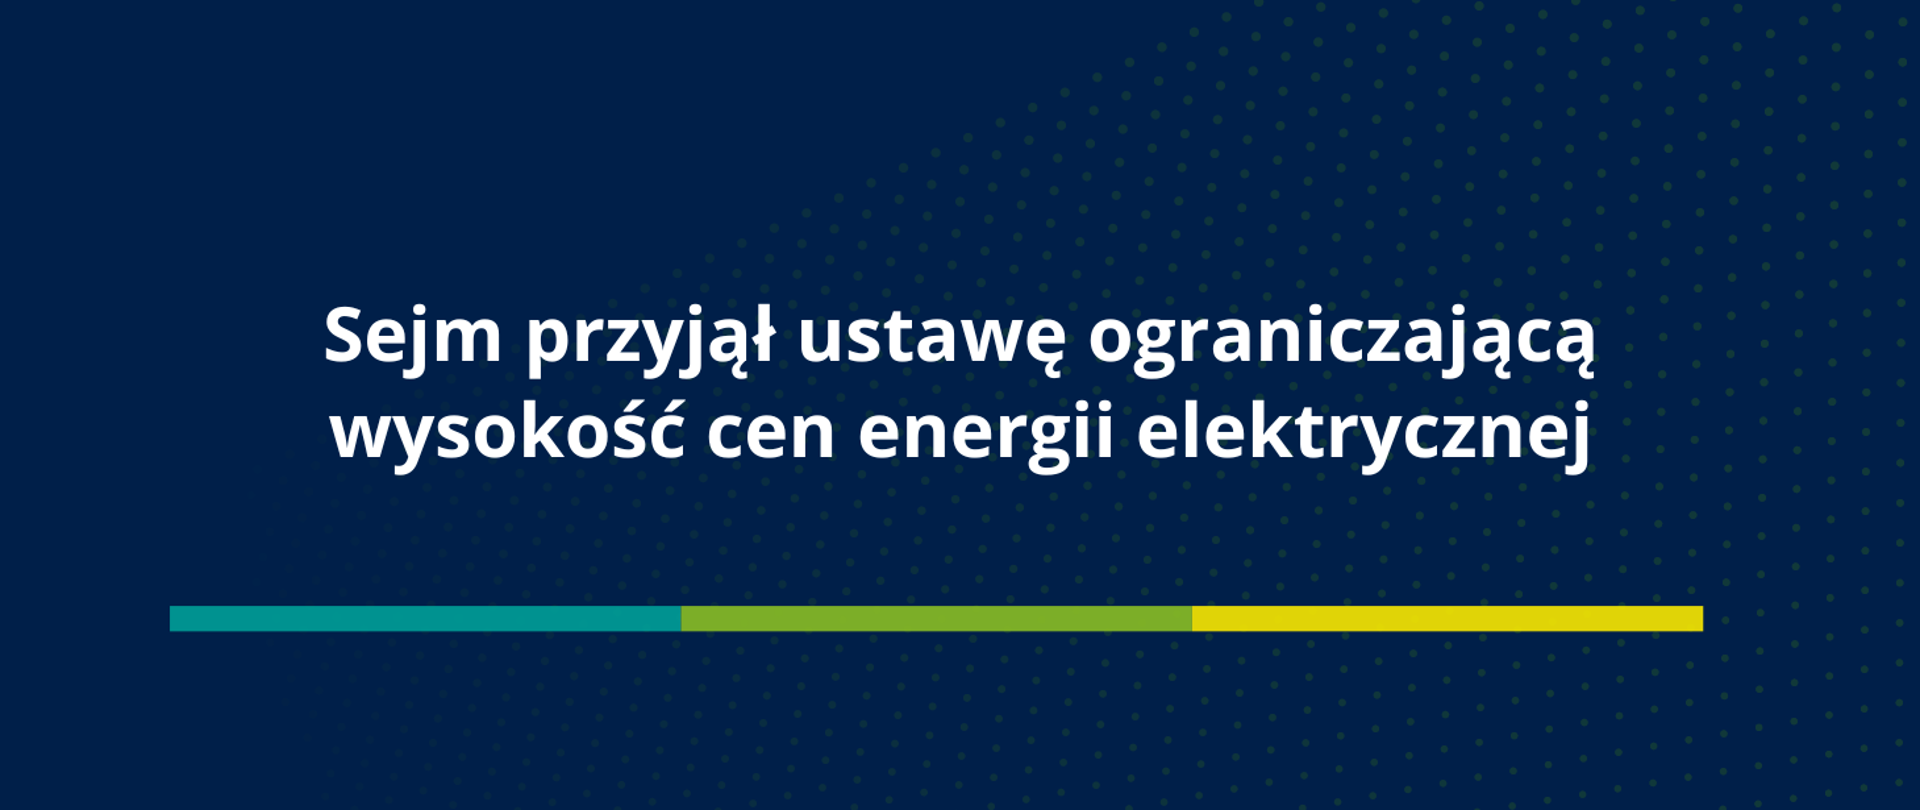 Sejm przyjął ustawę ograniczającą wysokość cen energii elektrycznej